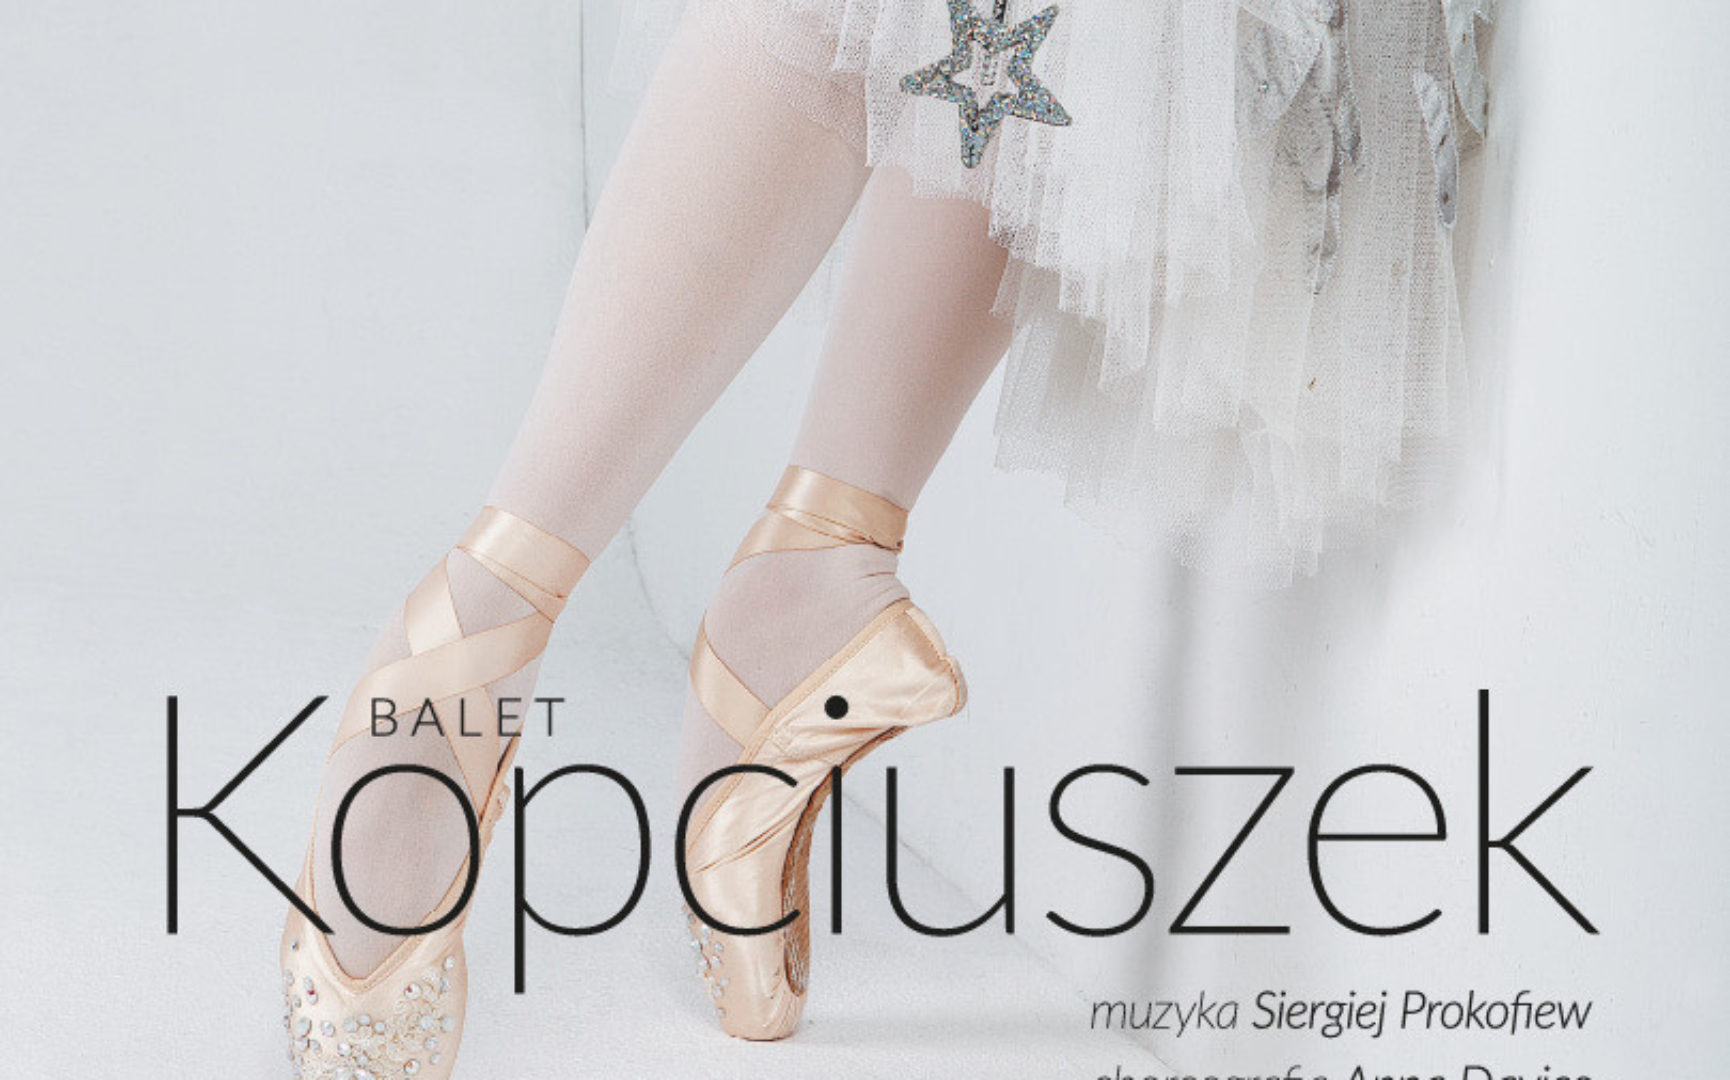 Balet Kopciuszek – familijny spektakl baletowy